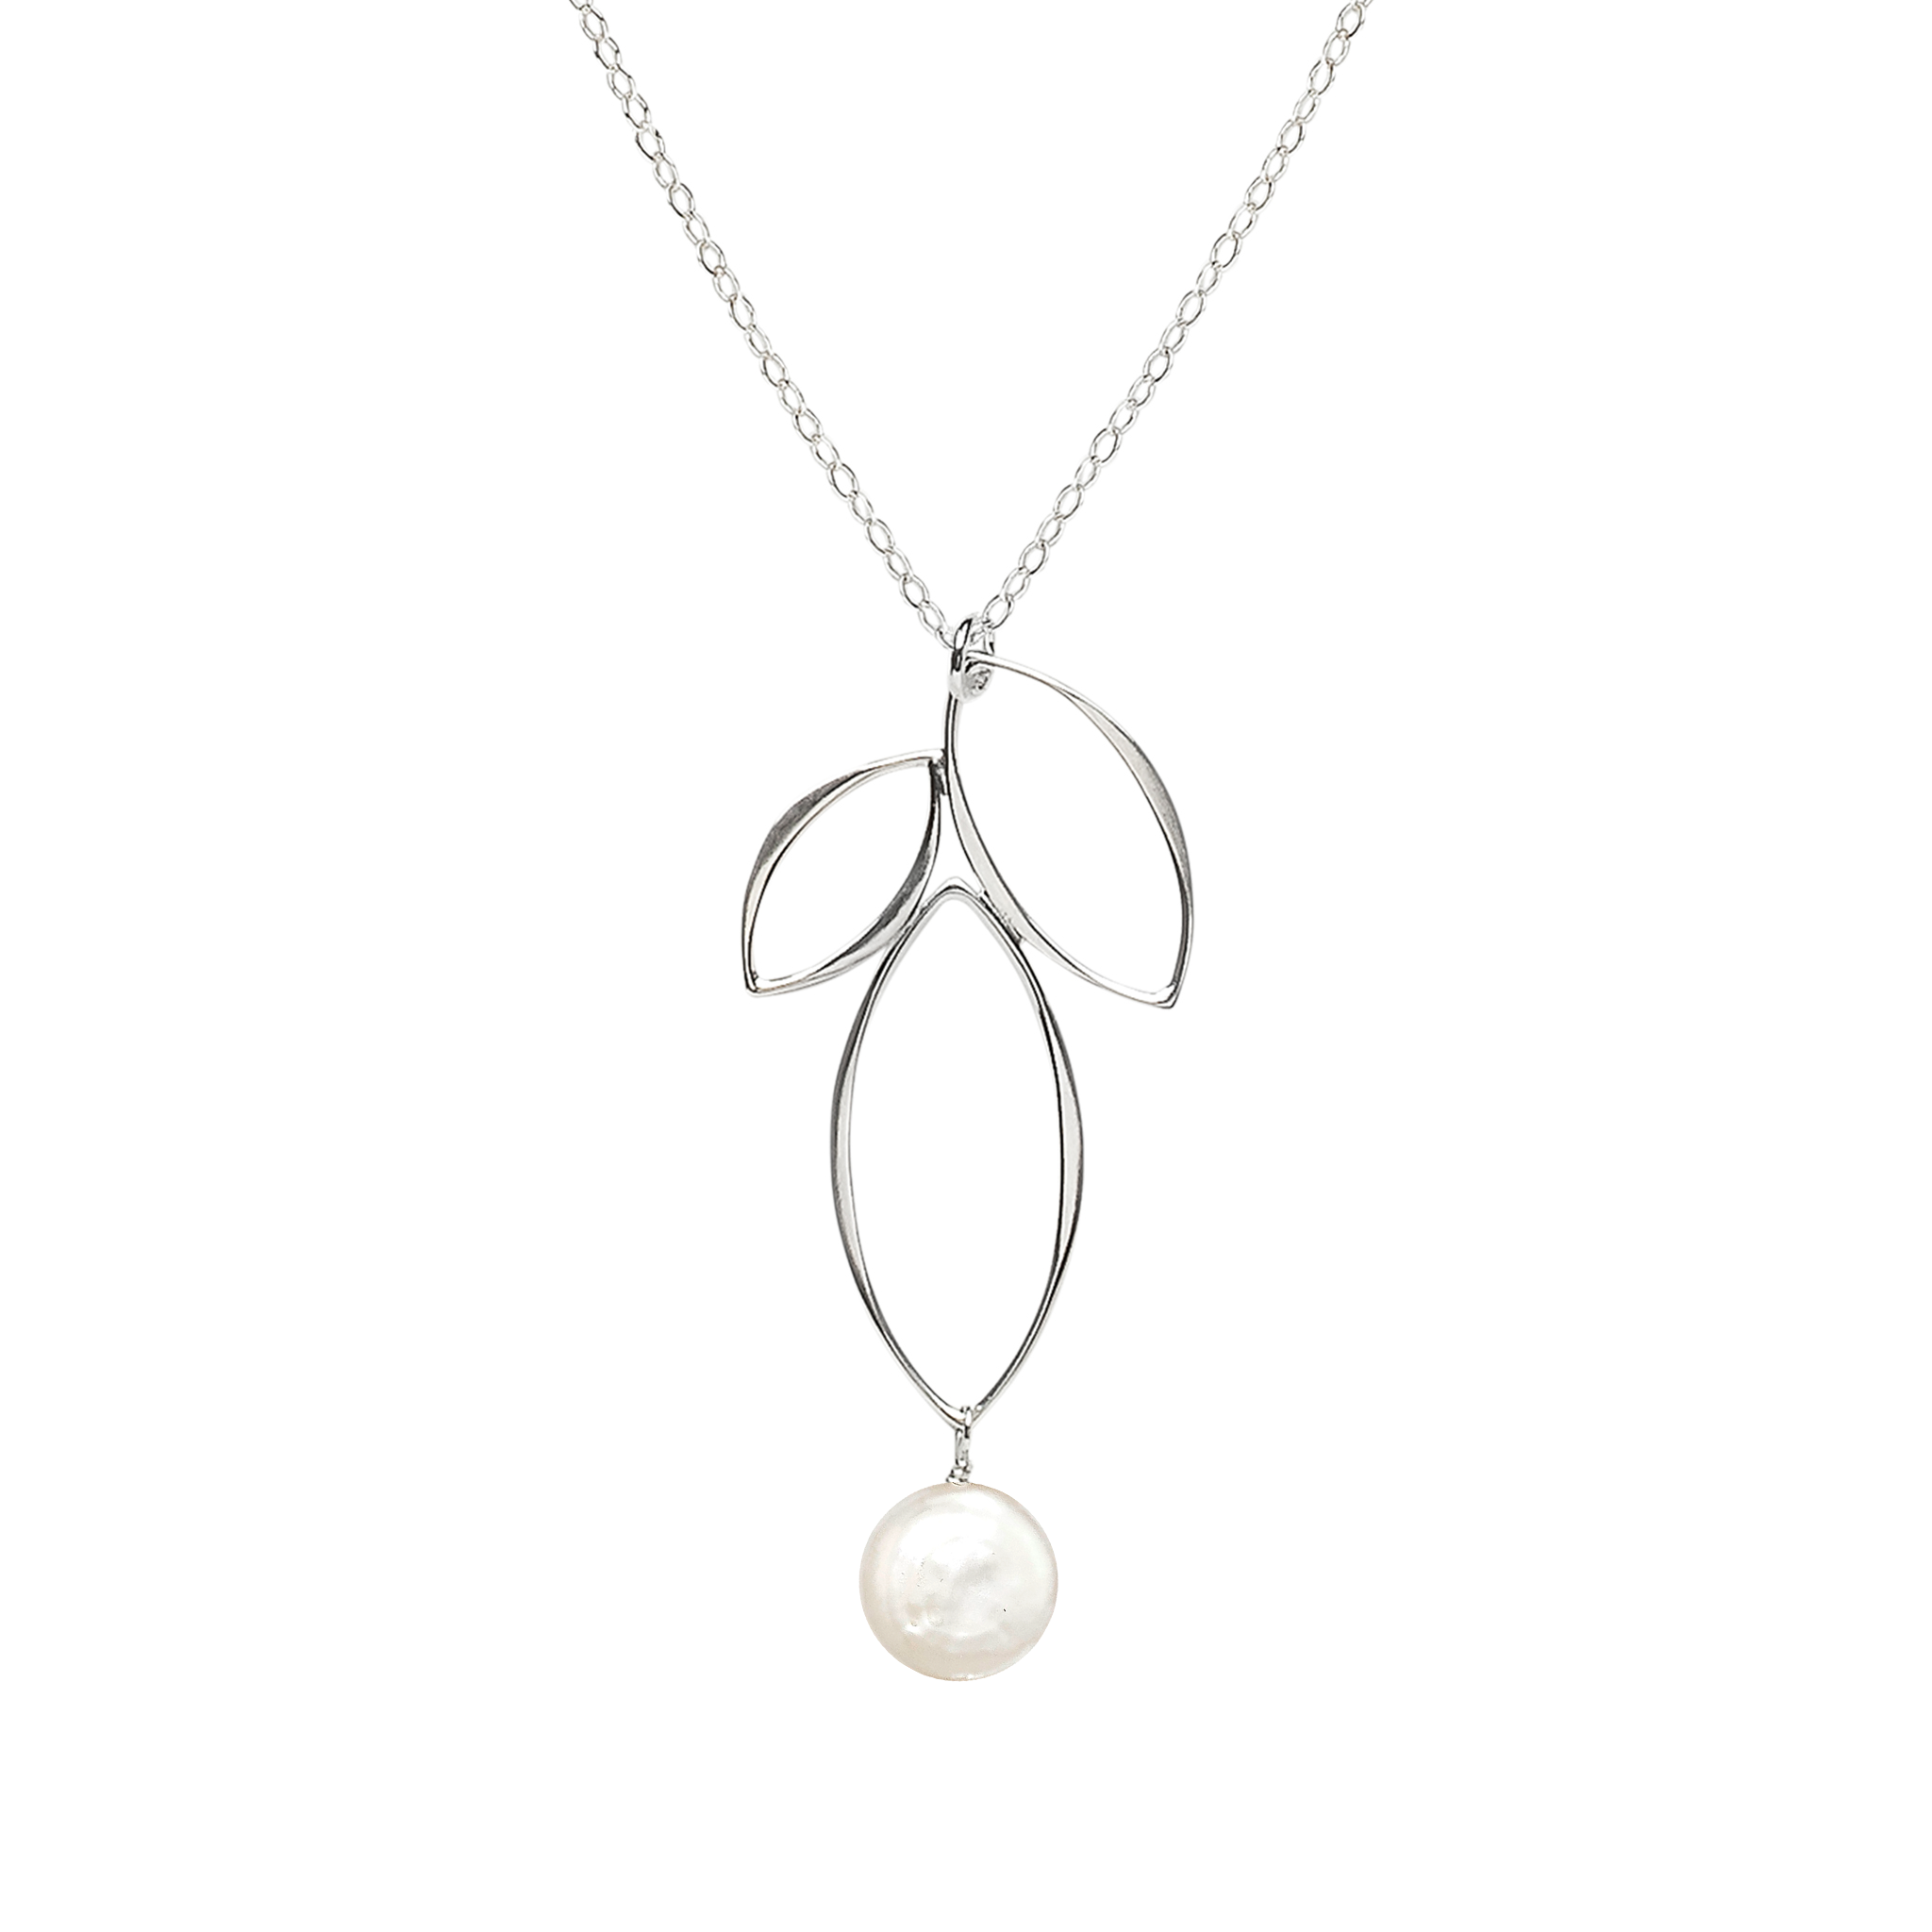 Ella Silver Small Fuchsia Necklace with Gemstone